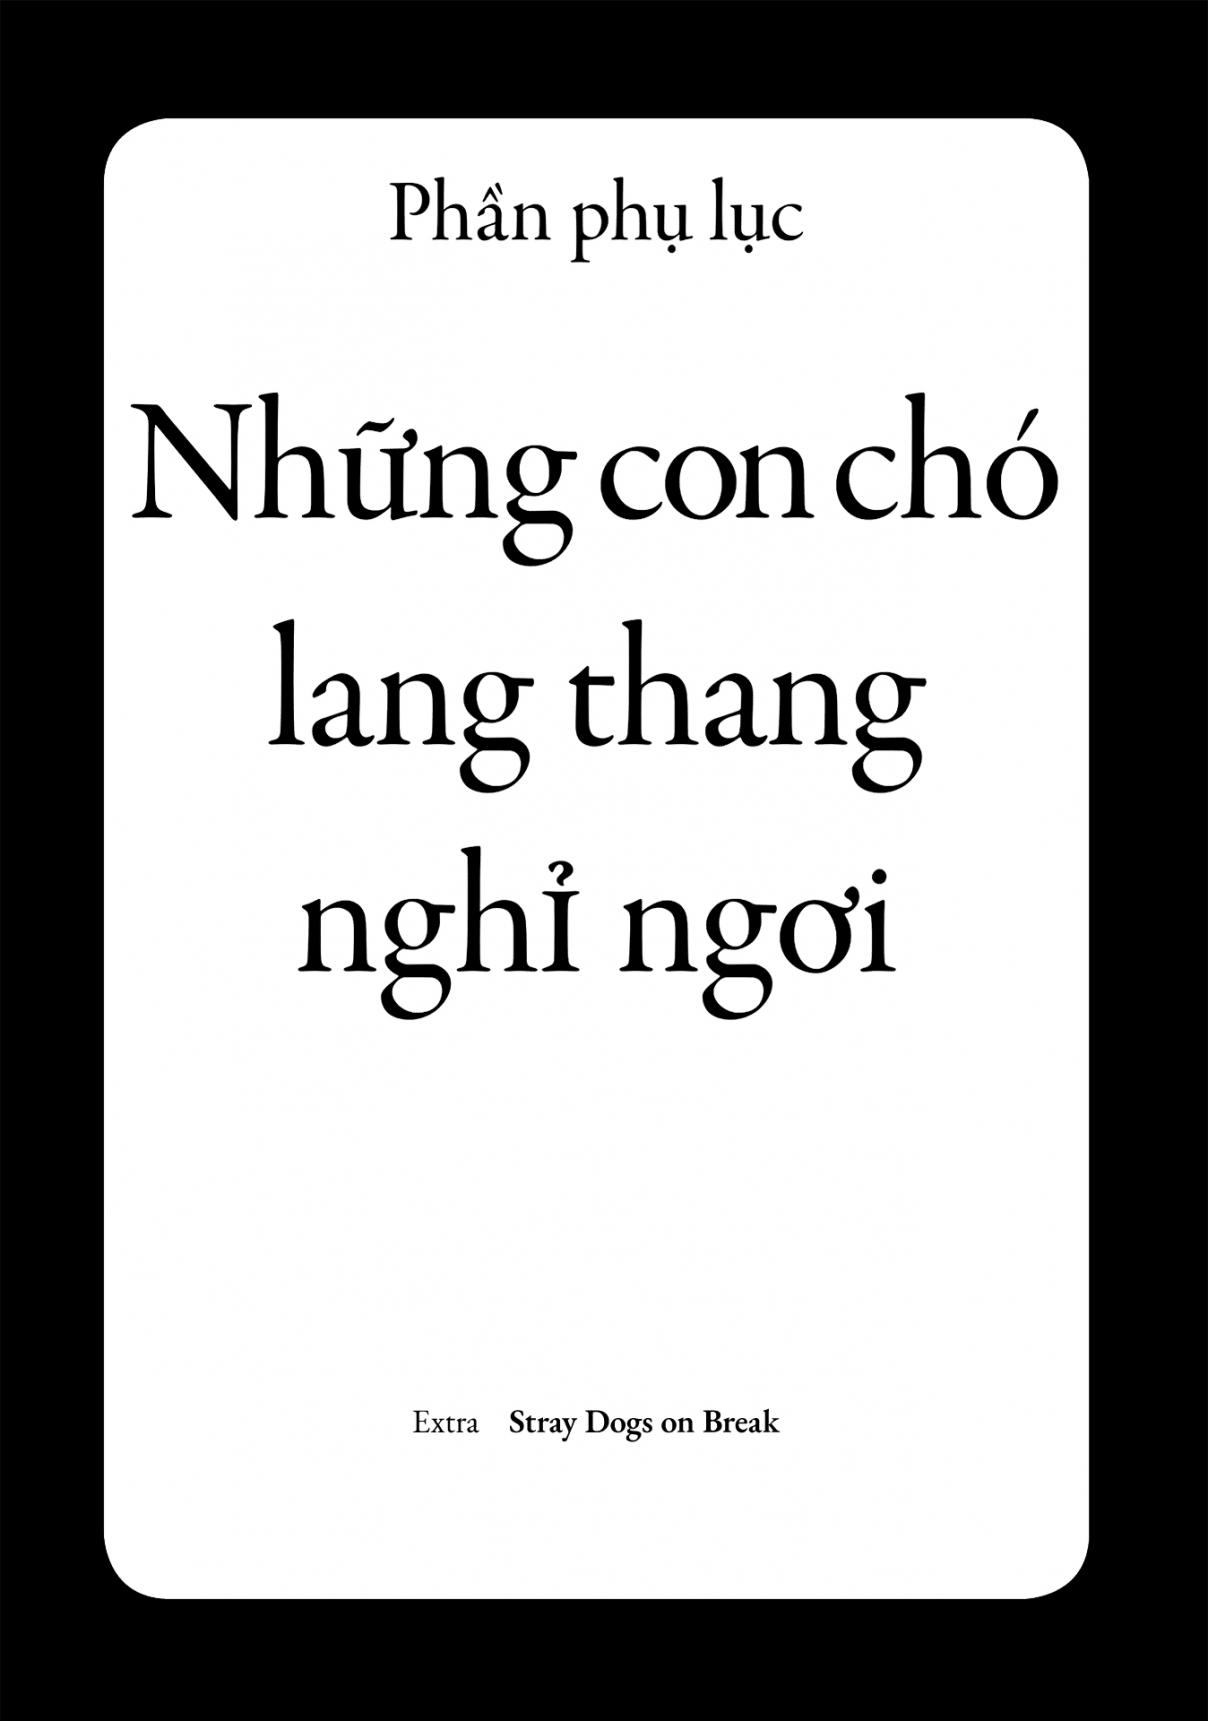 Dien Bien Phu Vol. 3 Ch. 18.1 Stray Dogs on Break